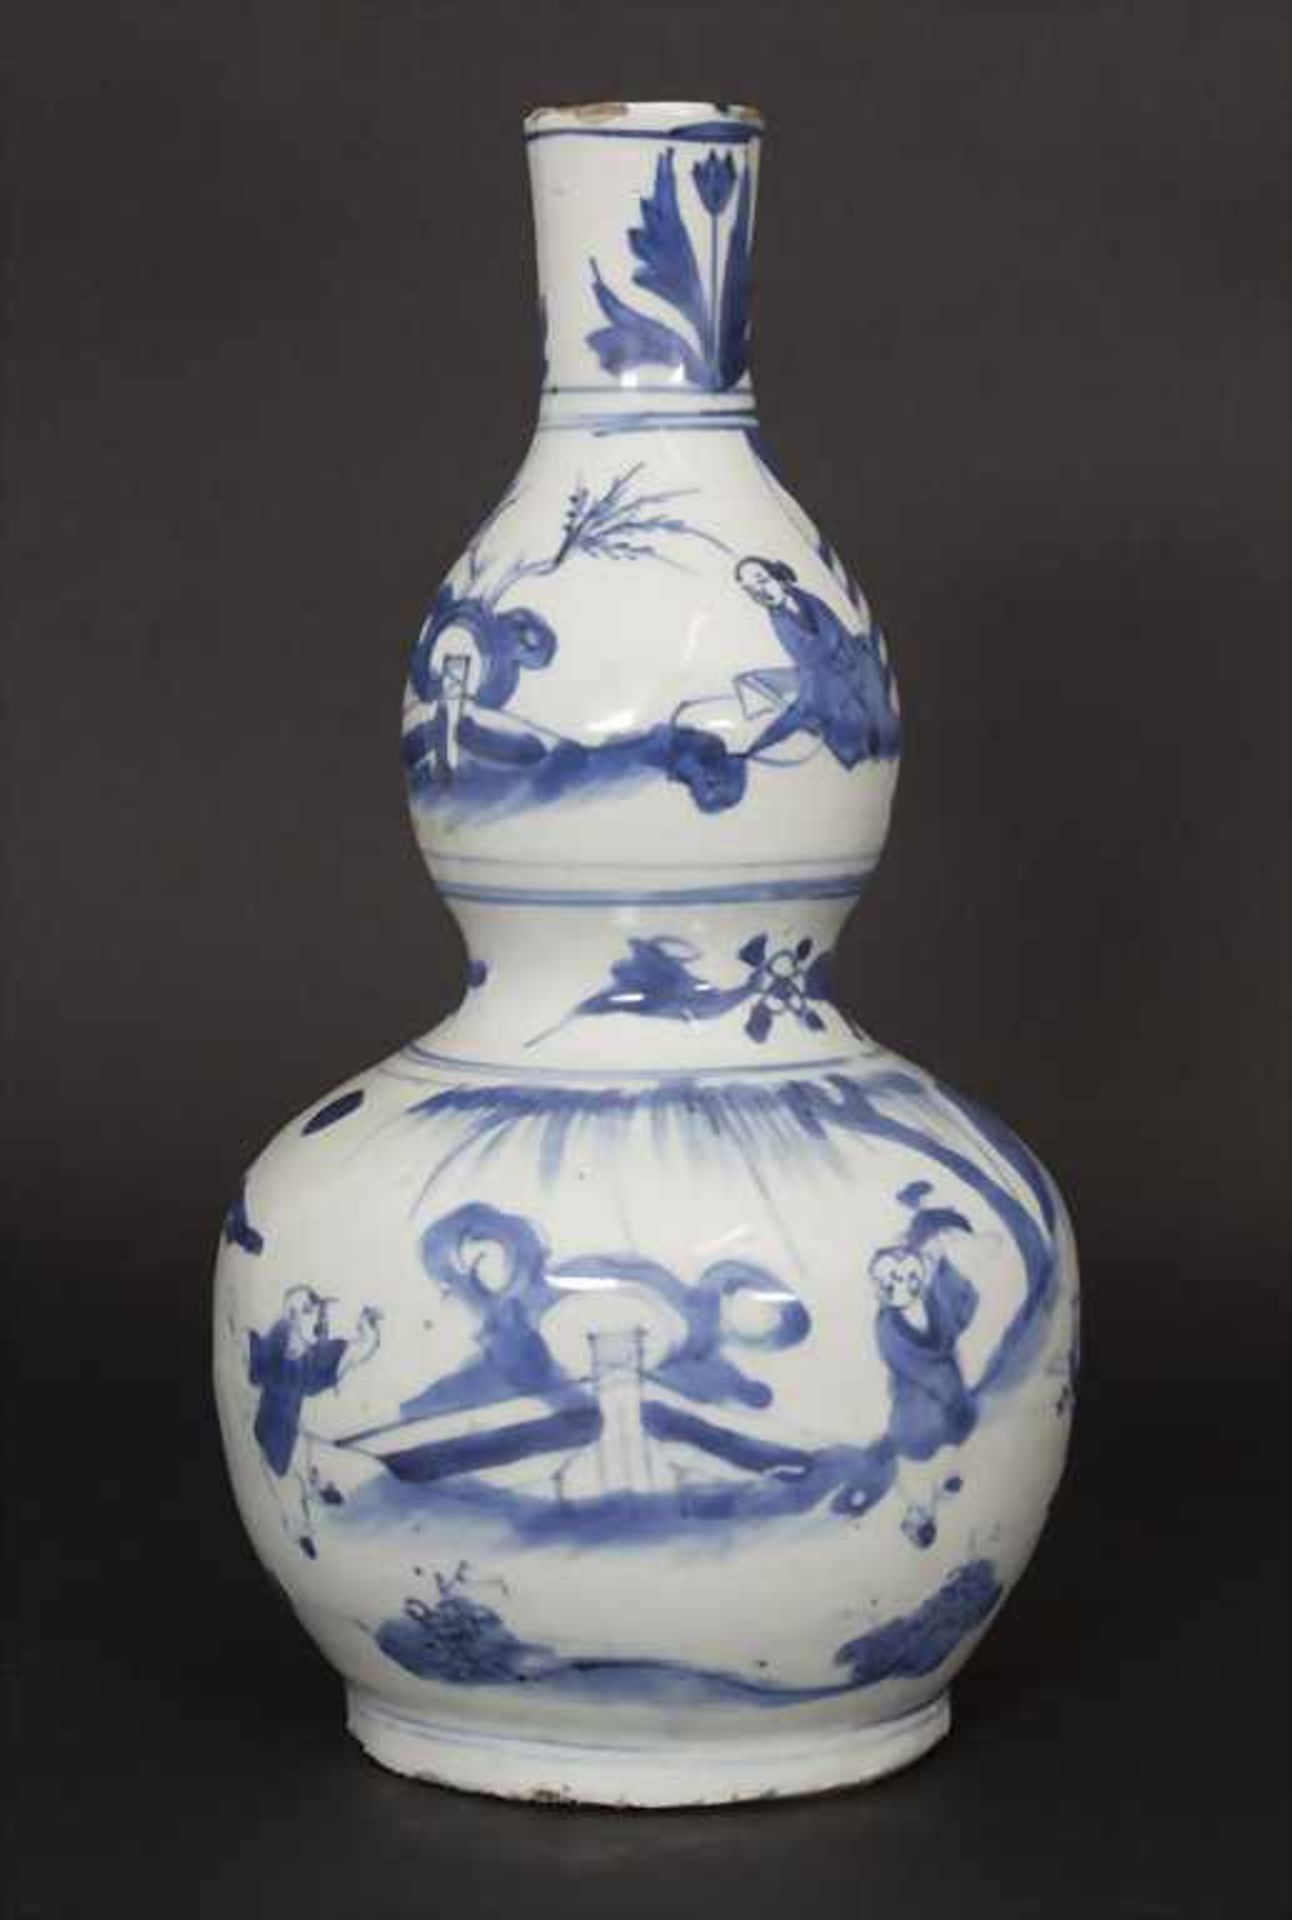 Kalebassenvase / A calabash vase, China, wohl 17. Jh.Material: Porzellan, blaue Unterglasurmalerei,